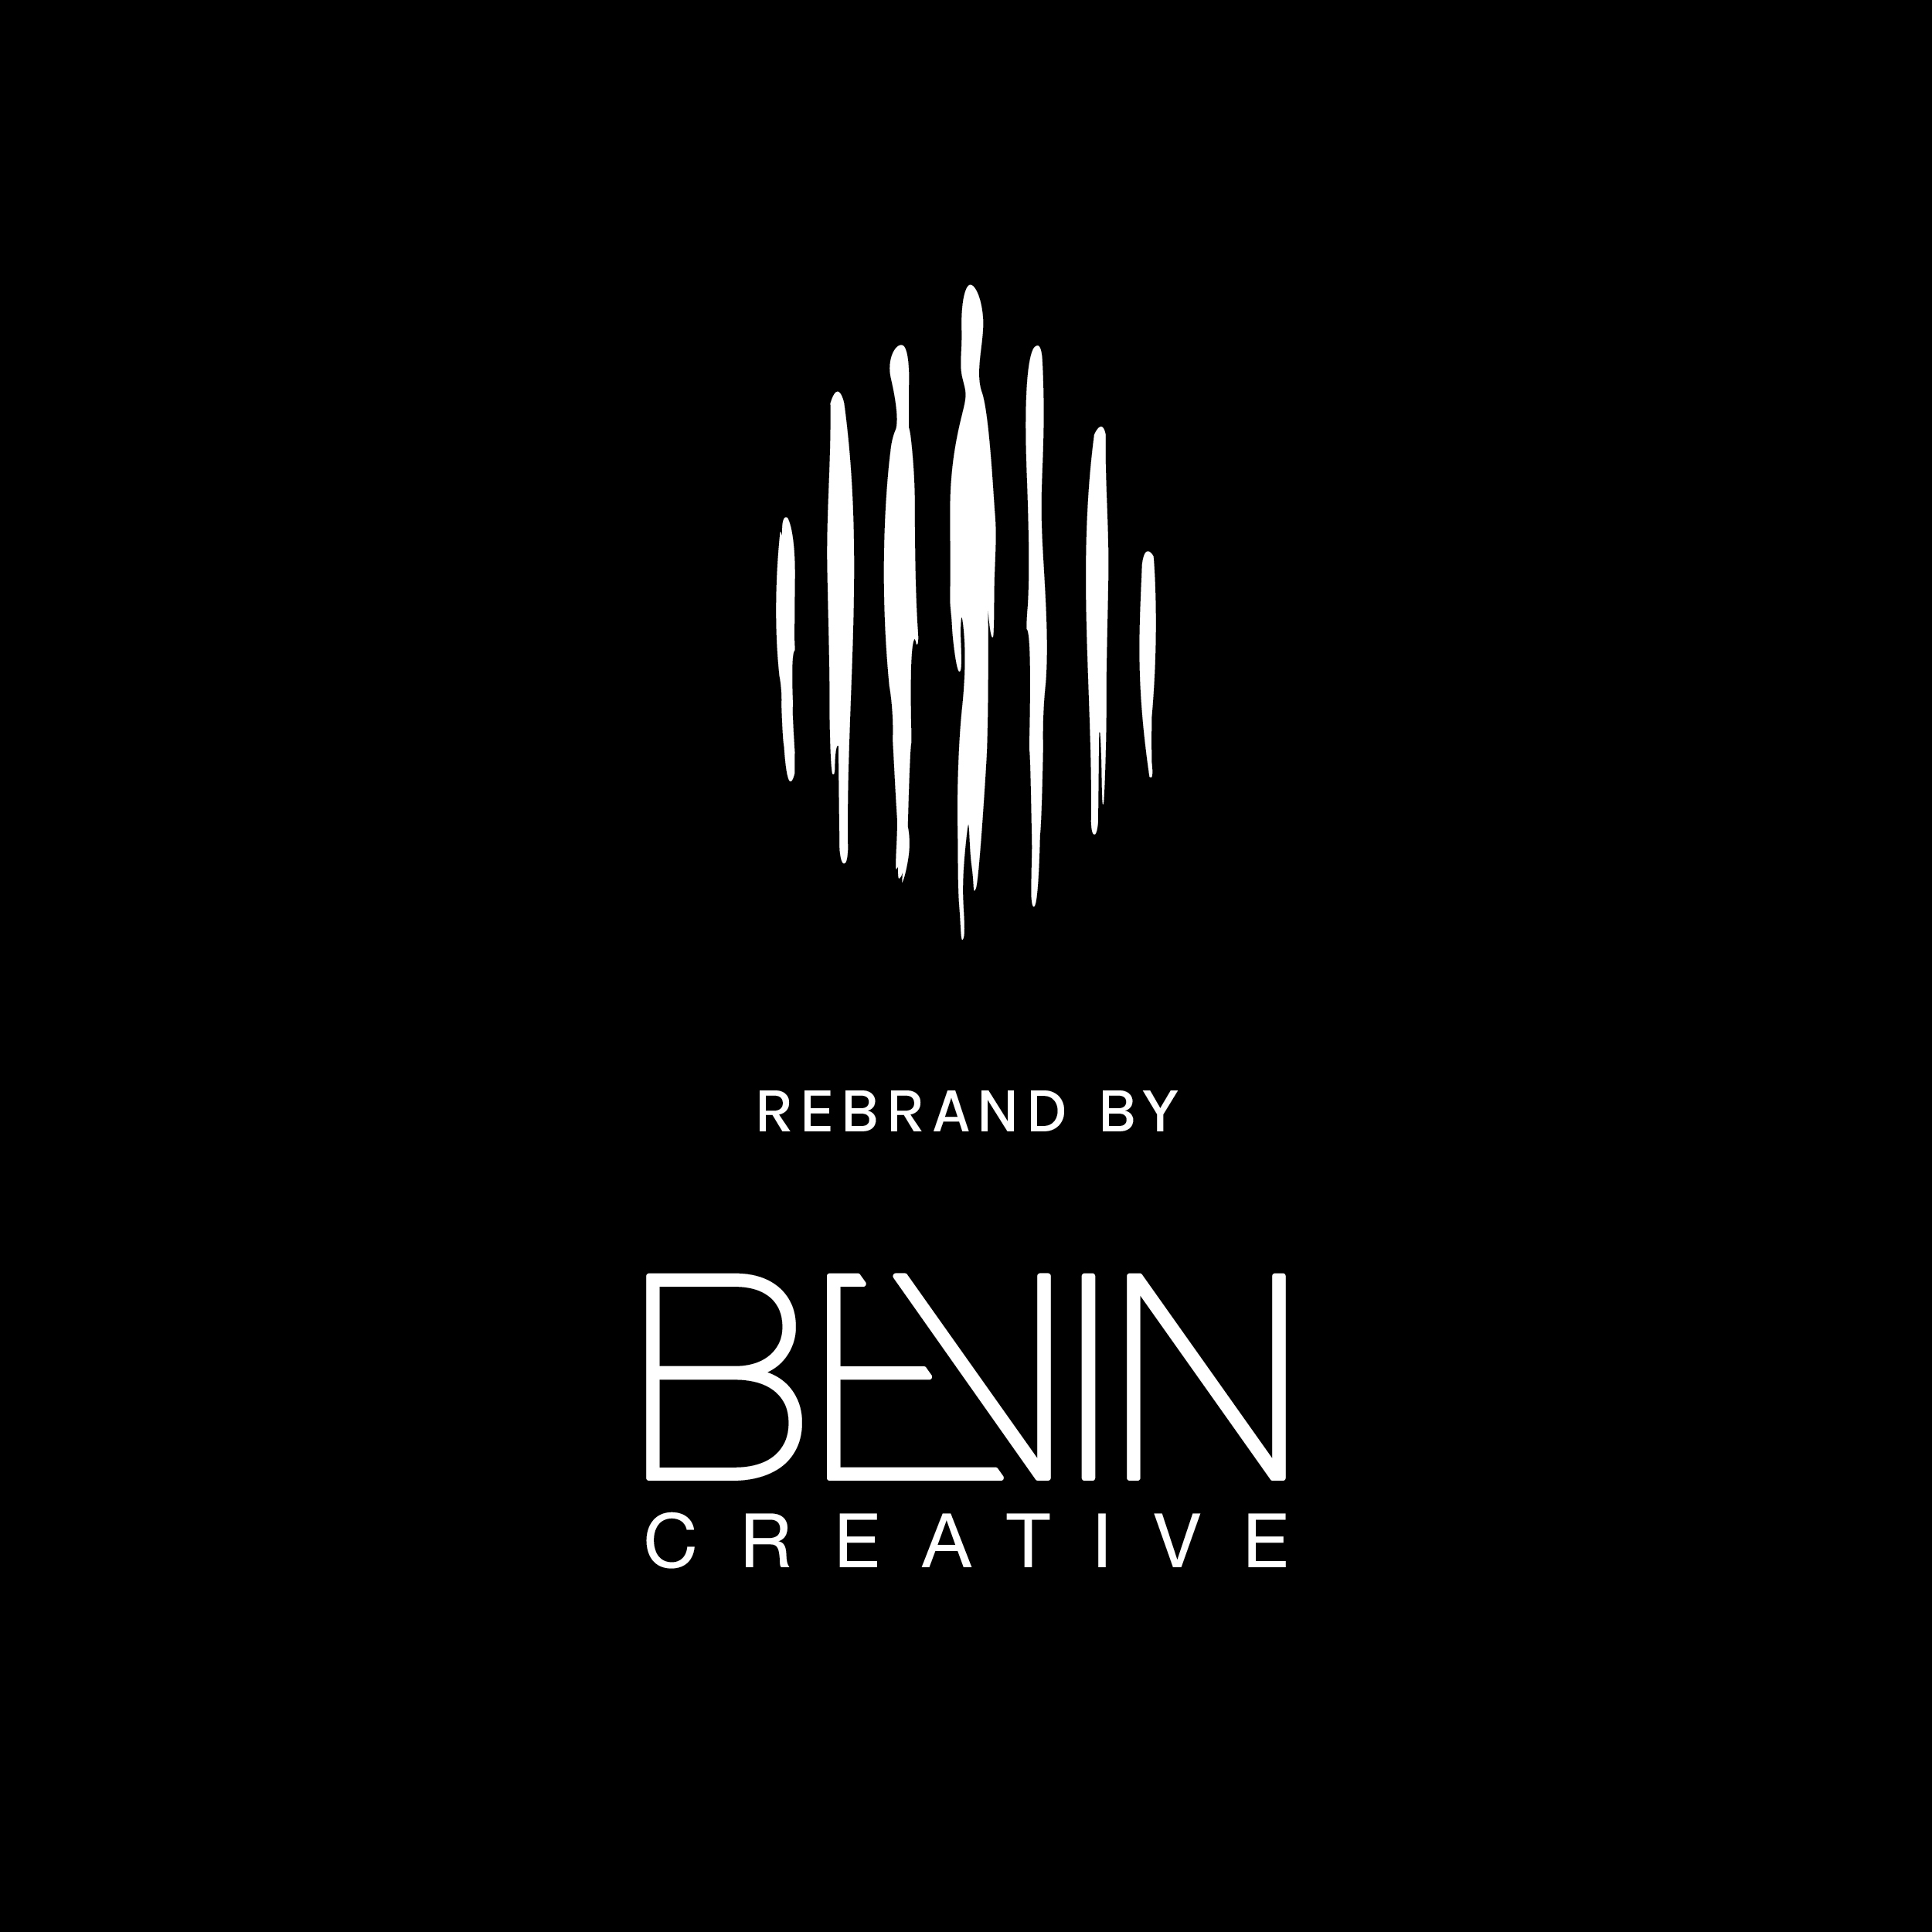 BEVIN CREATIVE – YIRRA YAAKIN